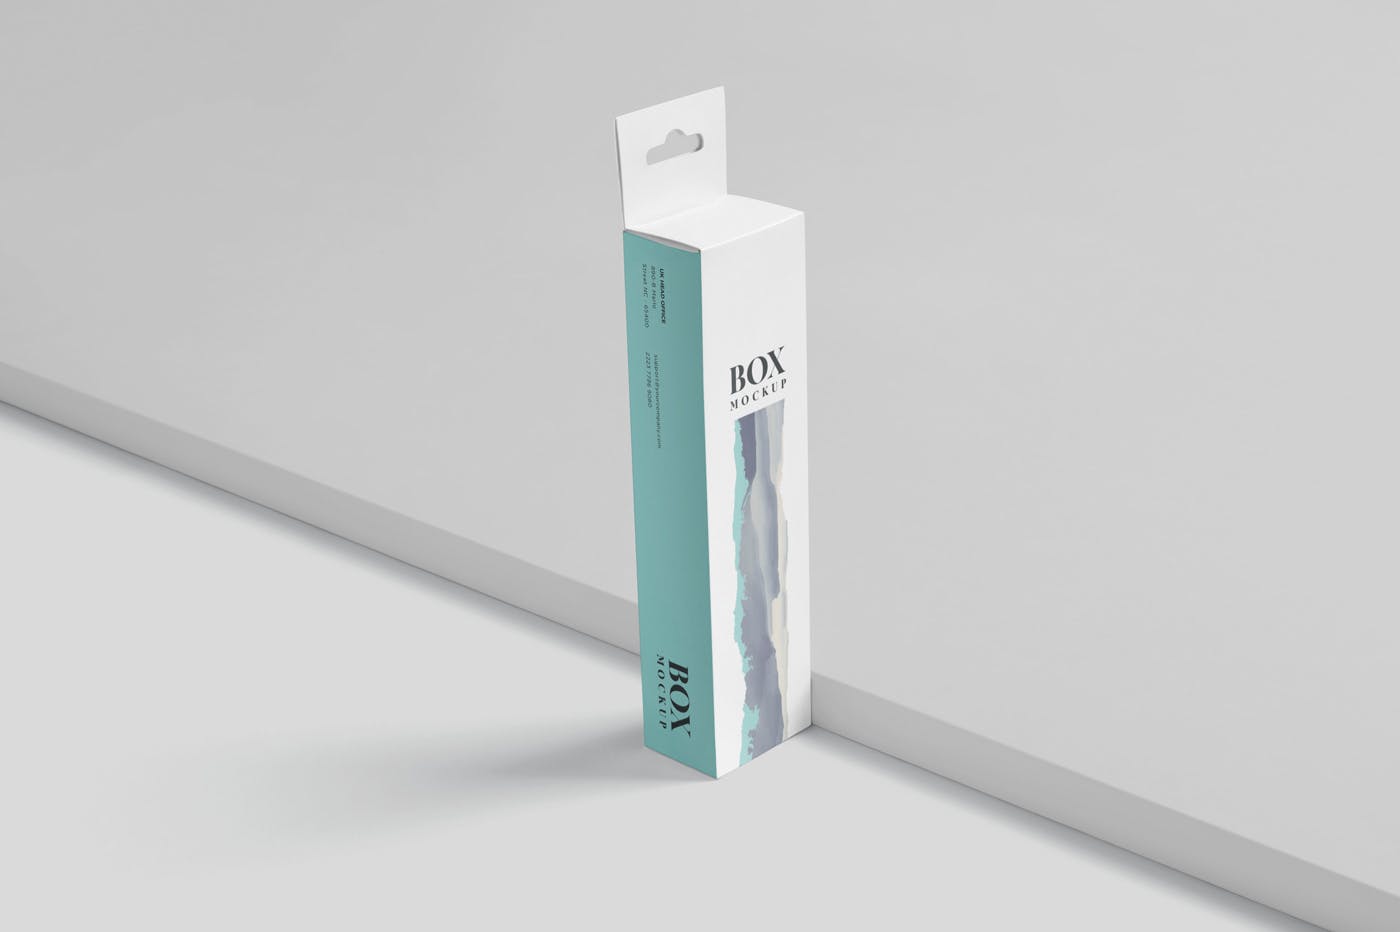 超薄矩形长条包装盒外观设计效果图蚂蚁素材精选 Box Mockup PSDs – High Slim Rectangle Size Hanger插图(2)